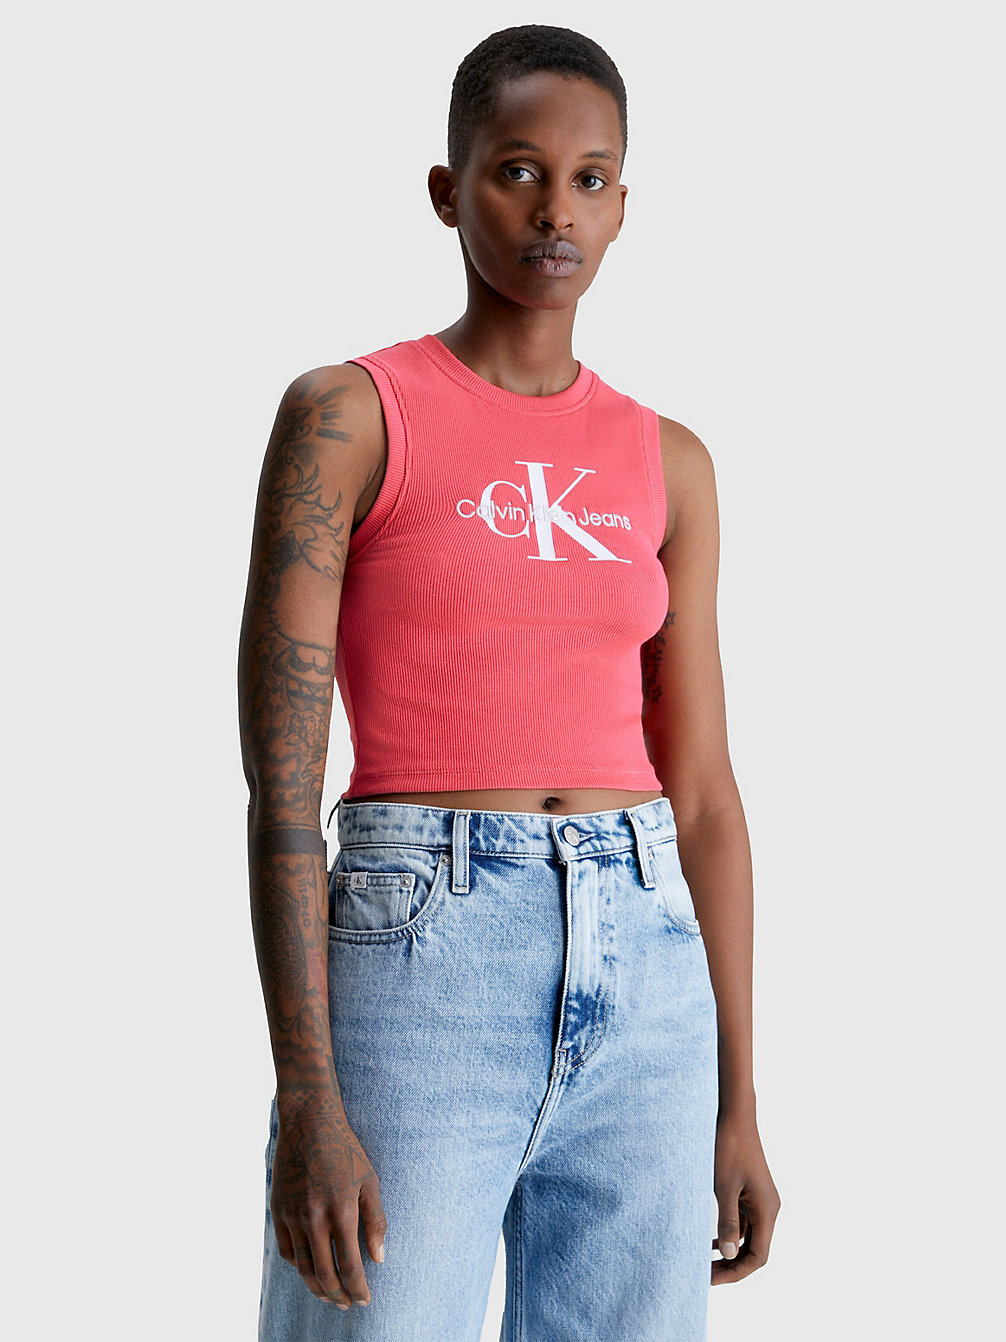 PINK FLASH Cropped Monogram Tank Top undefined women Calvin Klein